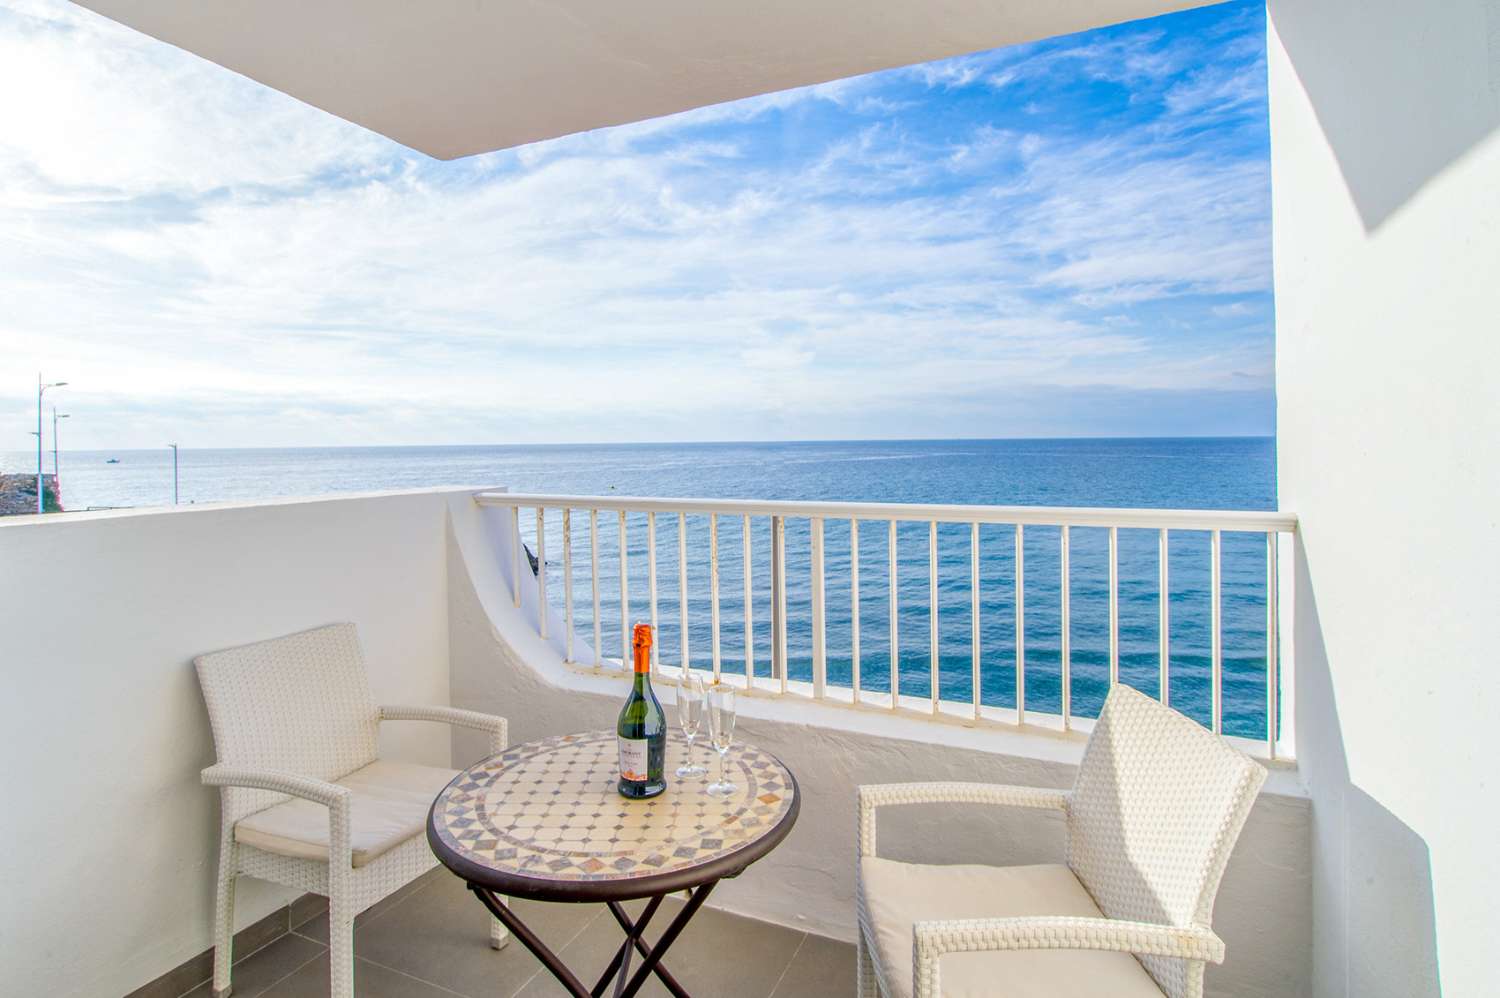 Fantástico apartamento en primera línea en venta en Nerja con acceso directo a la playa e impresionantes vistas al mar